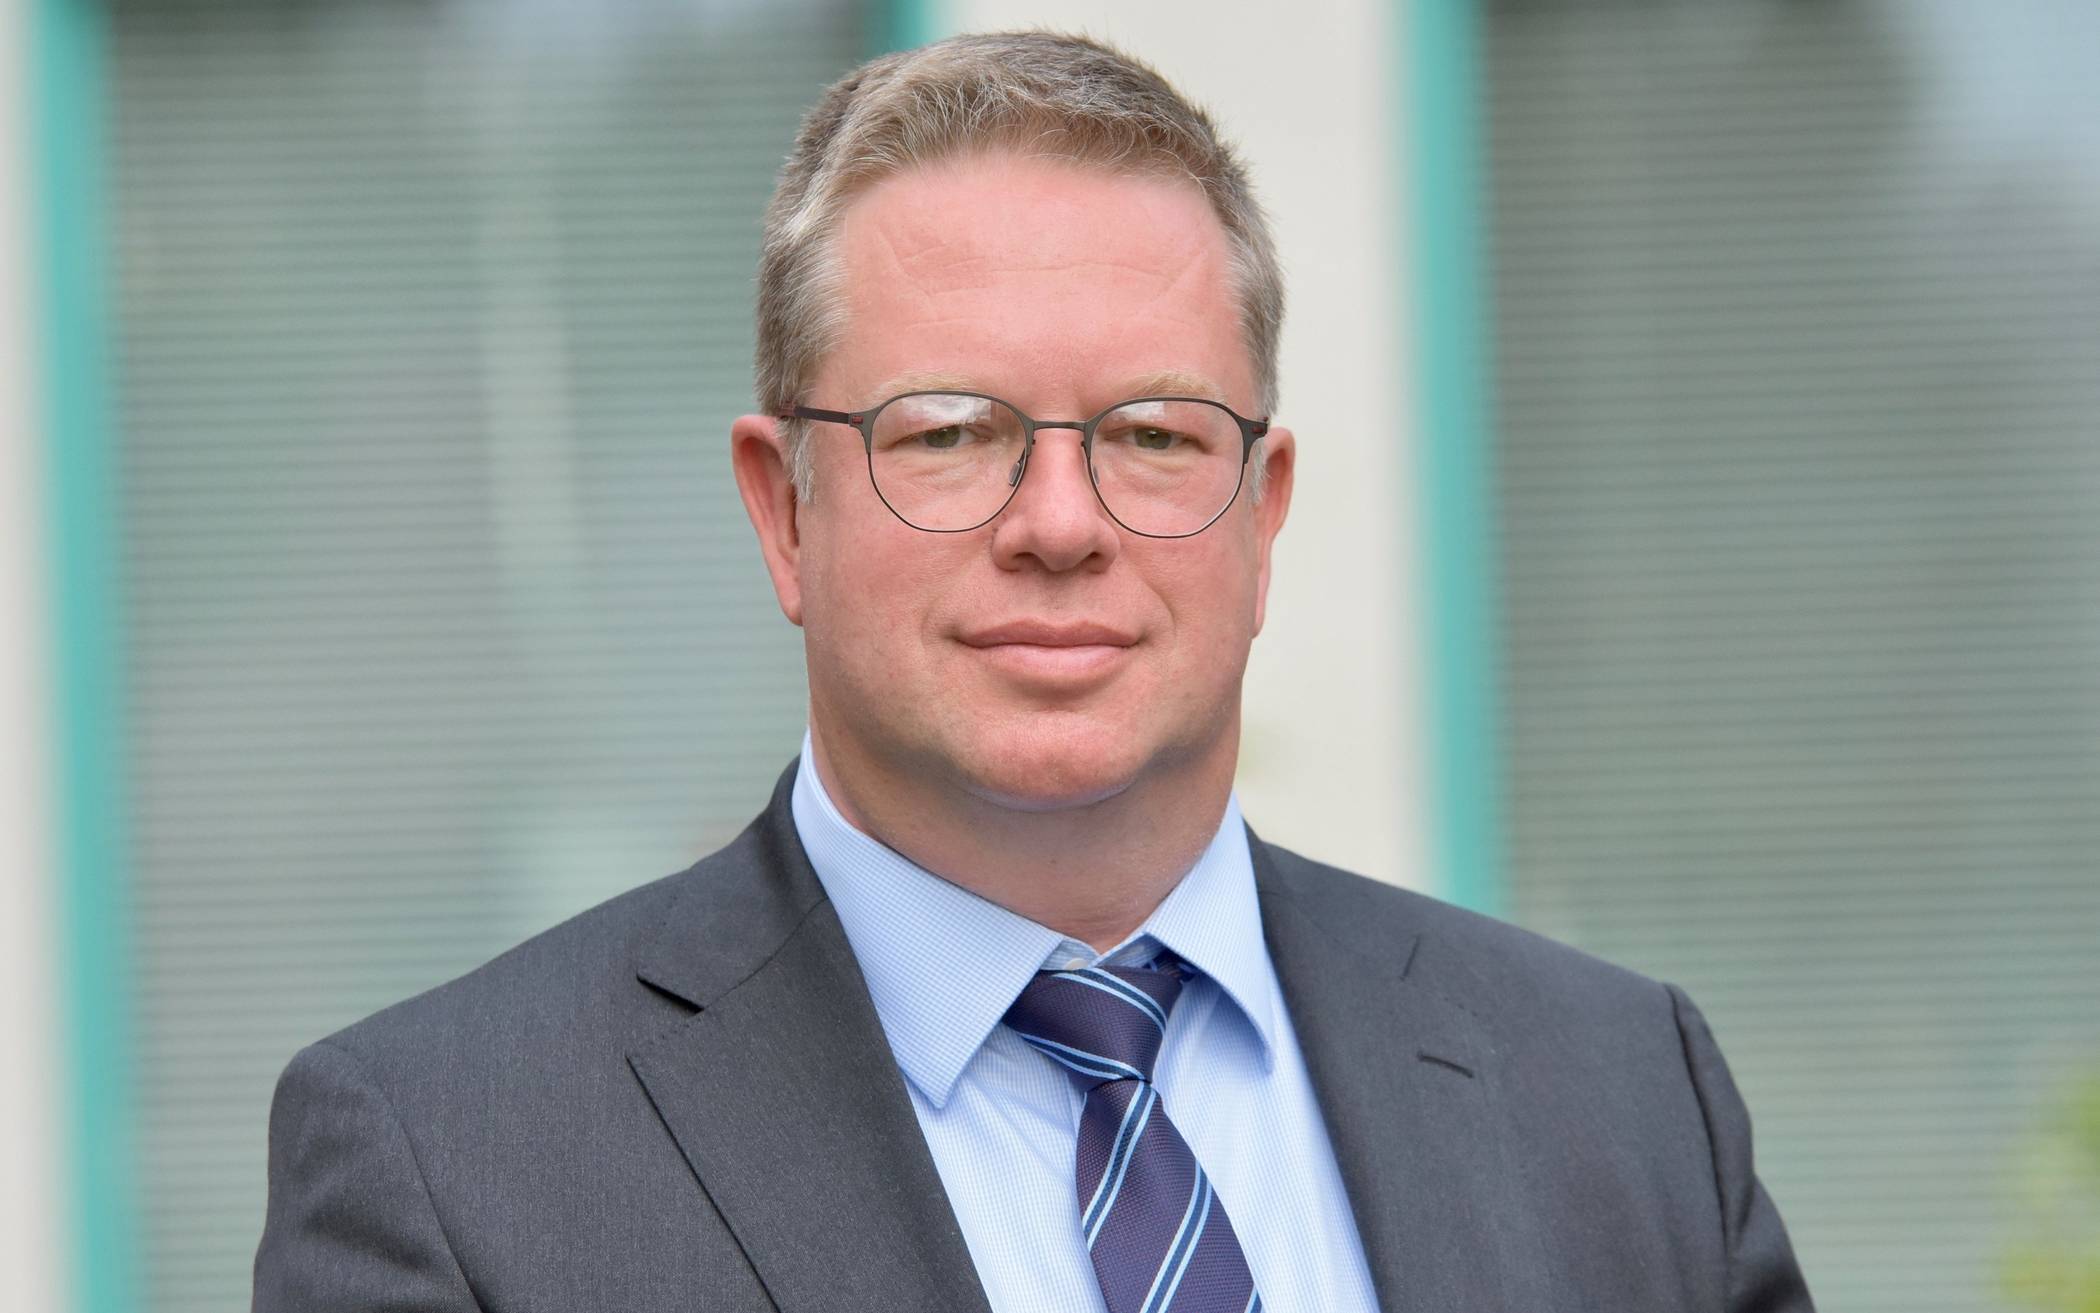  Georg Schmidt ist neuer Geschäftsführer der Rheinland Klinikum Neuss GmbH. 